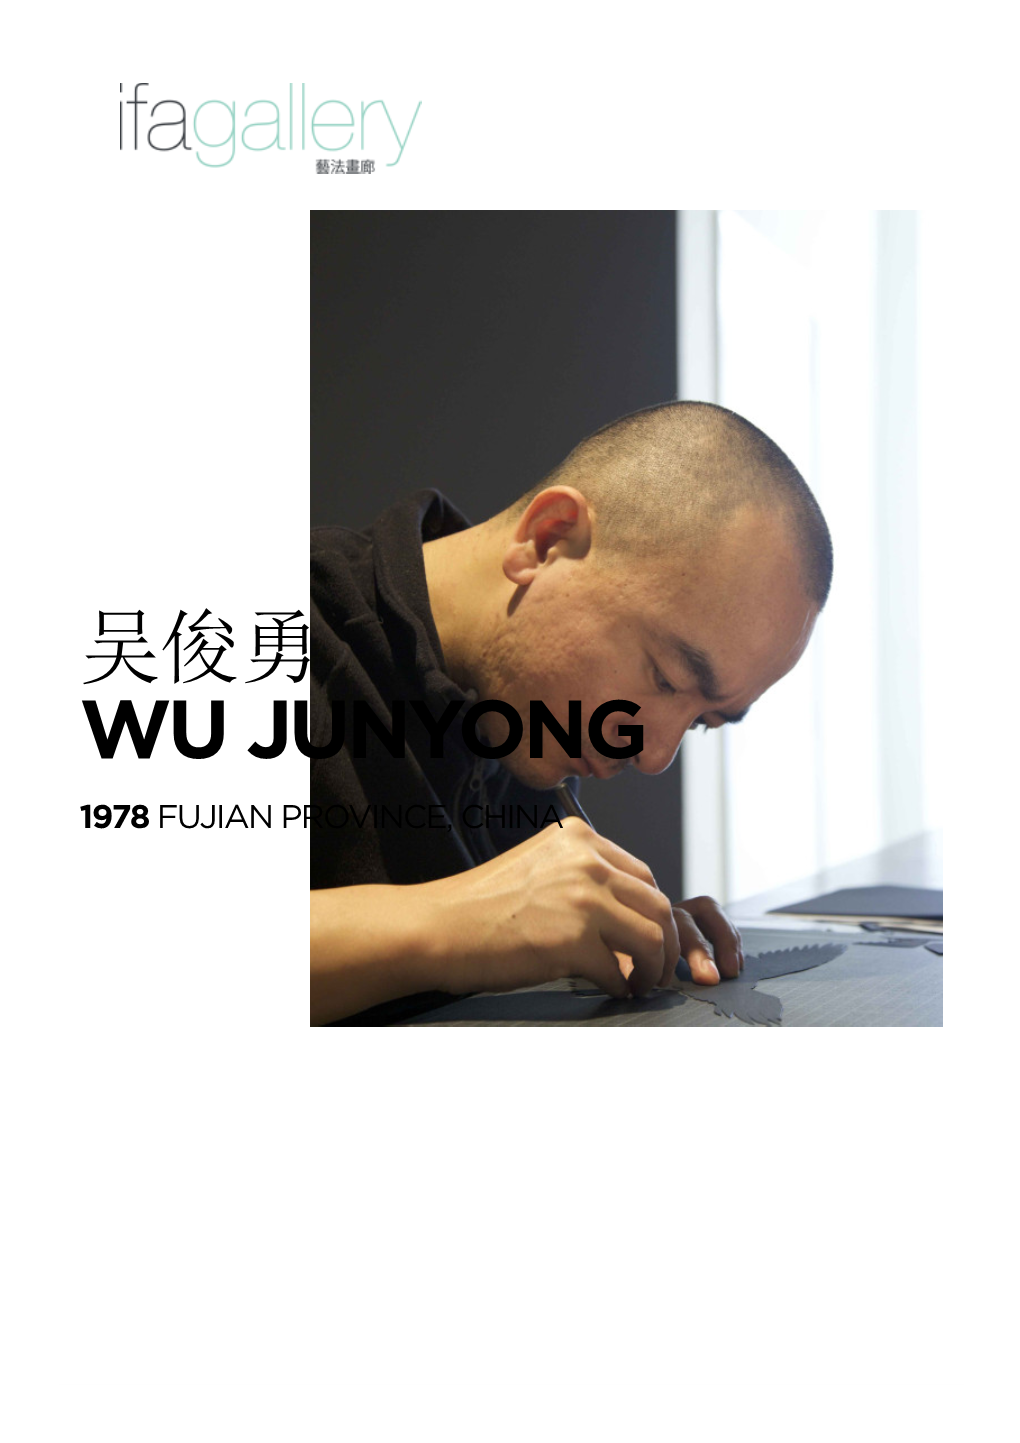 吴俊勇 Wu Junyong 1978 Fujian Province, China Biography